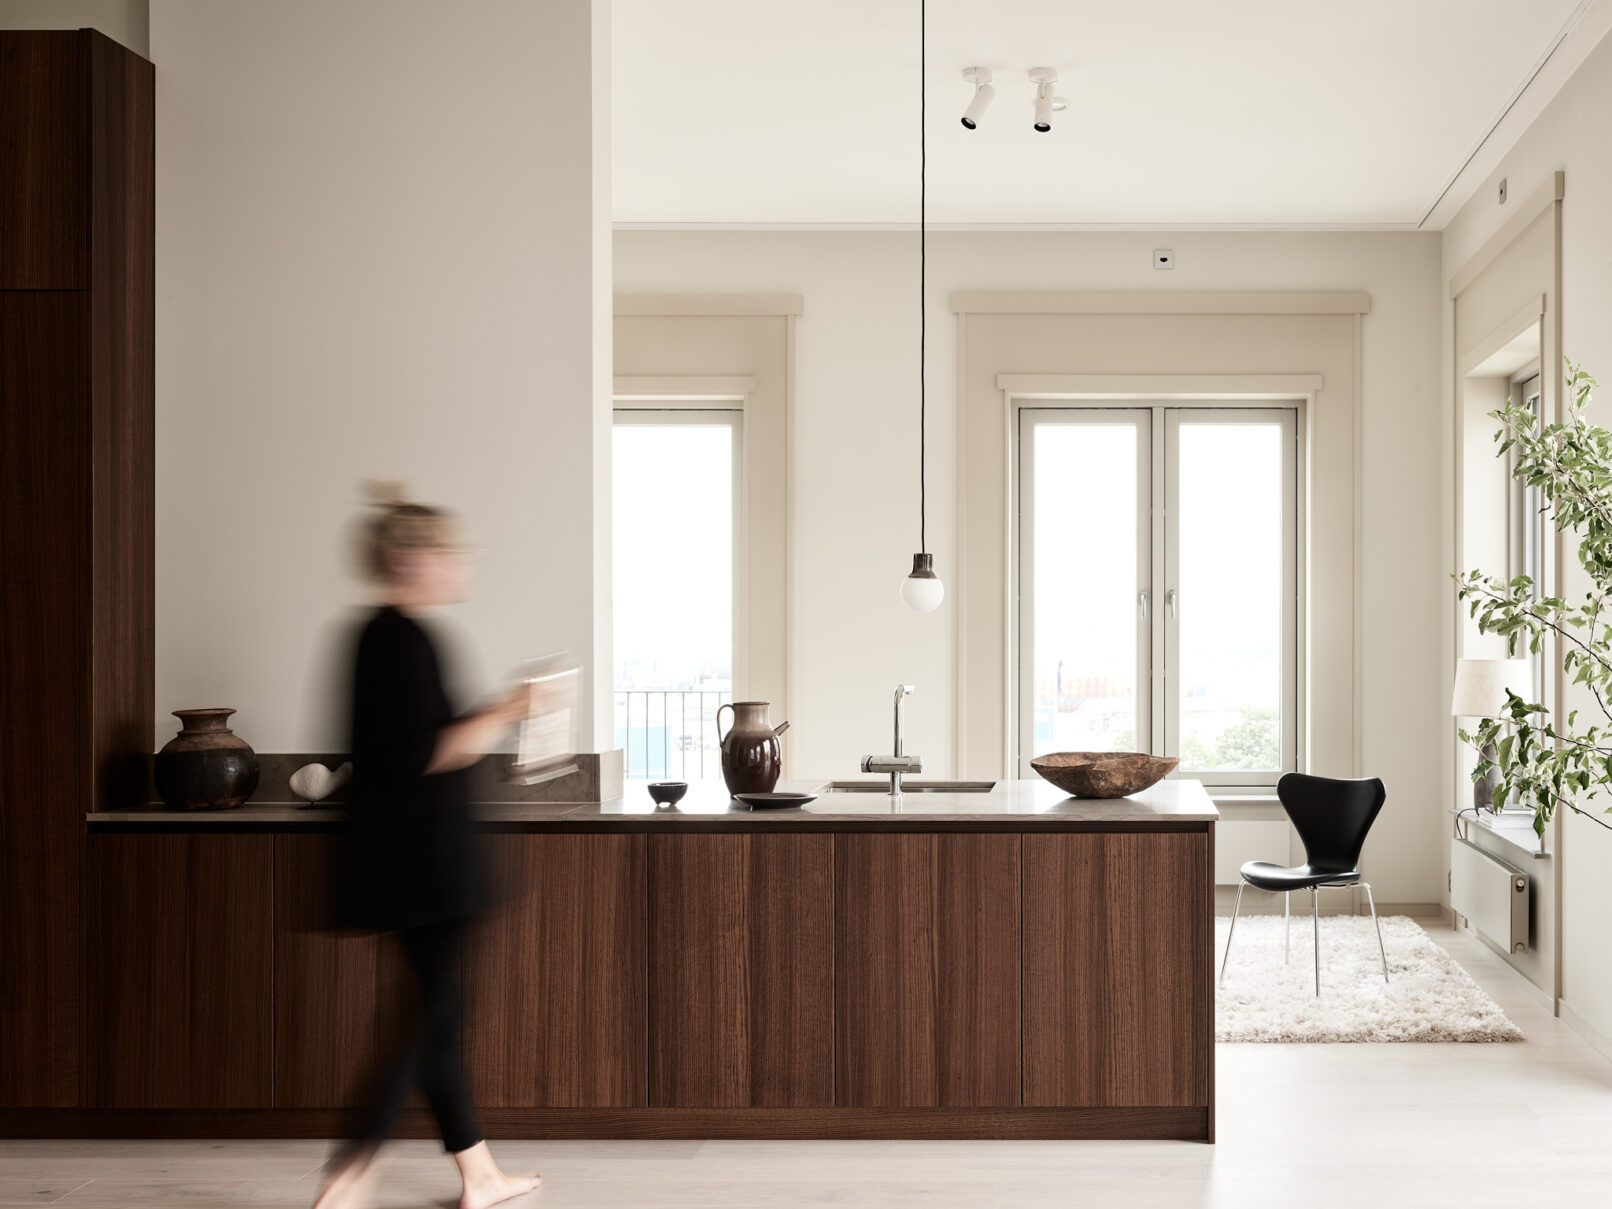 En kvinna navigerar graciöst genom ett fascinerande designat Kvänum kök, elegant fångat i ett interiörfotografi.